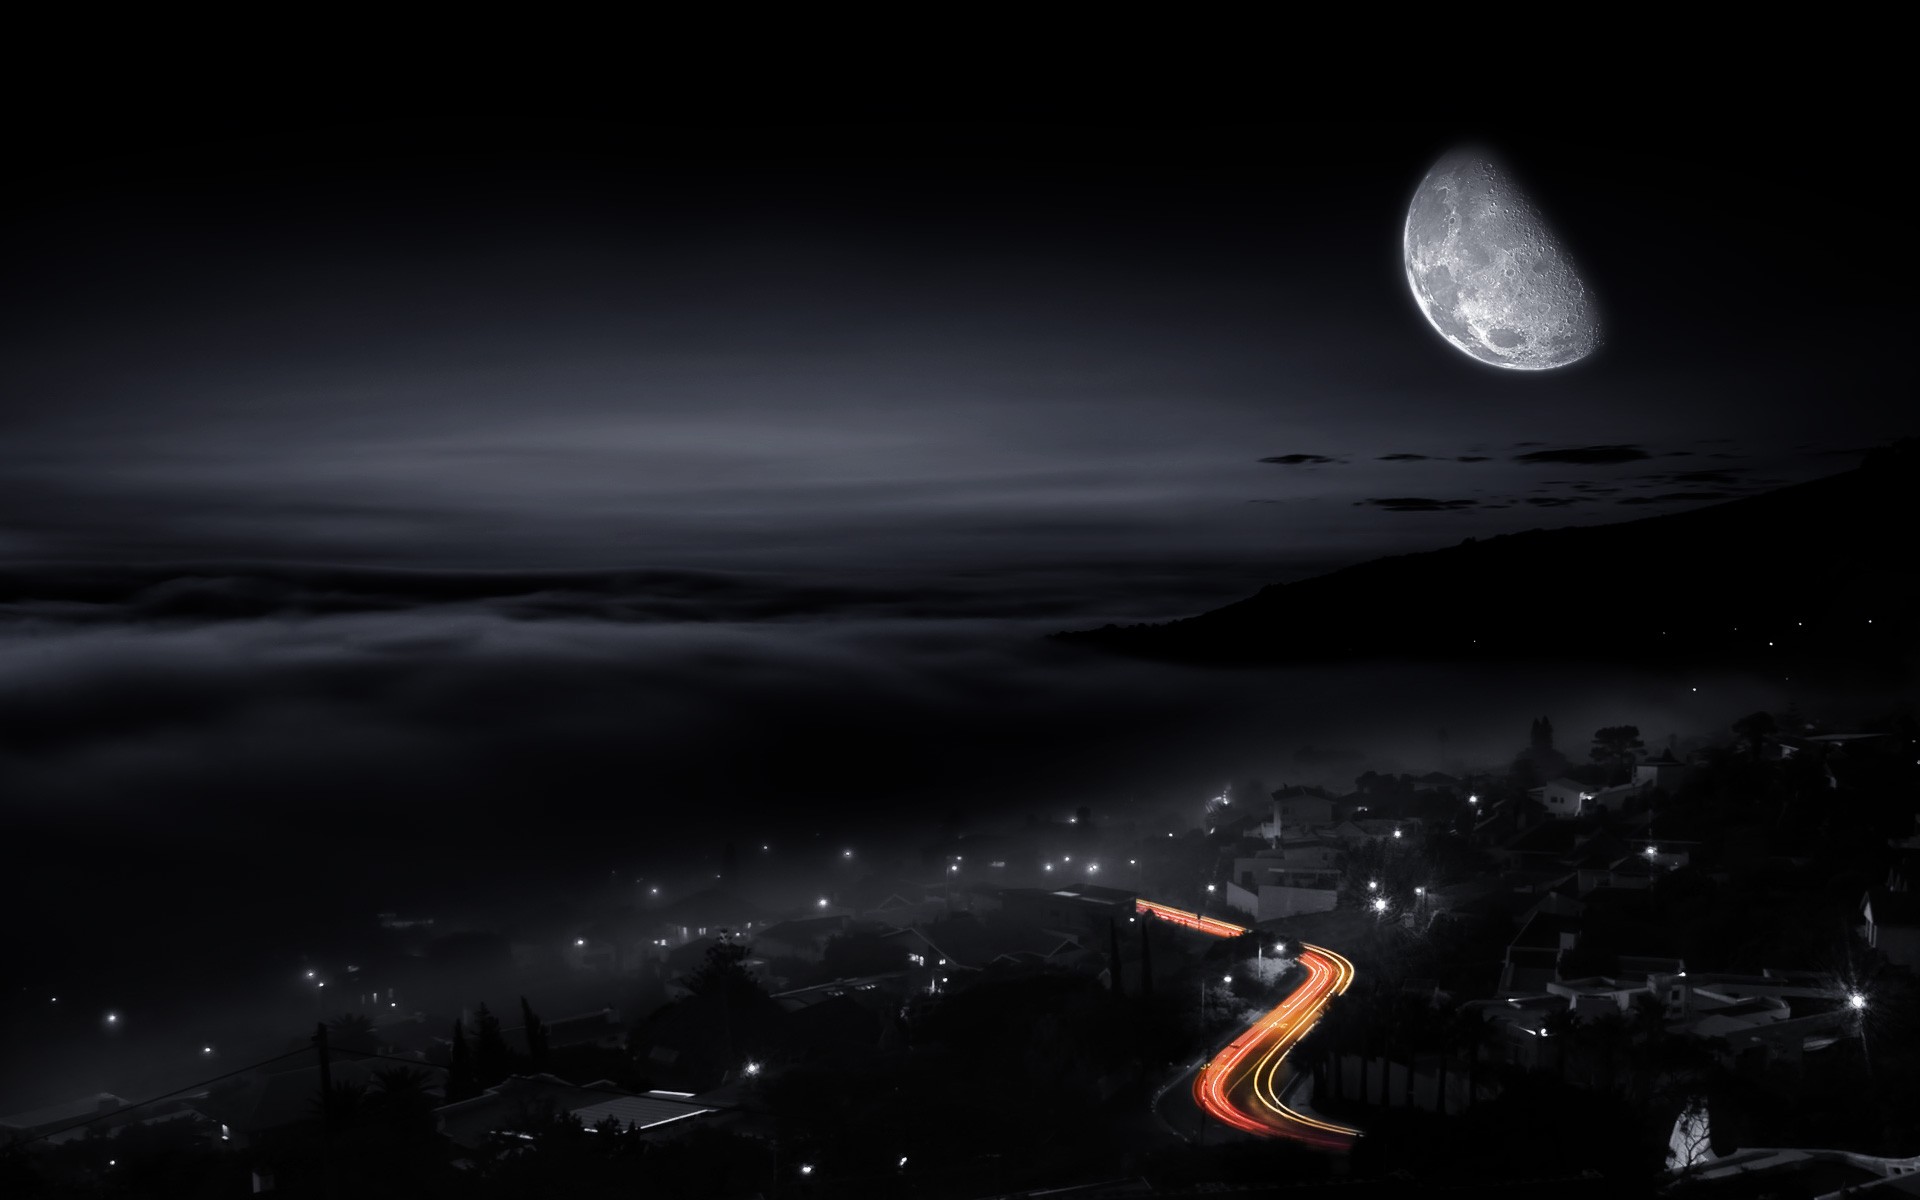 Бесплатное фото Обои с изображением луны над ночным городом